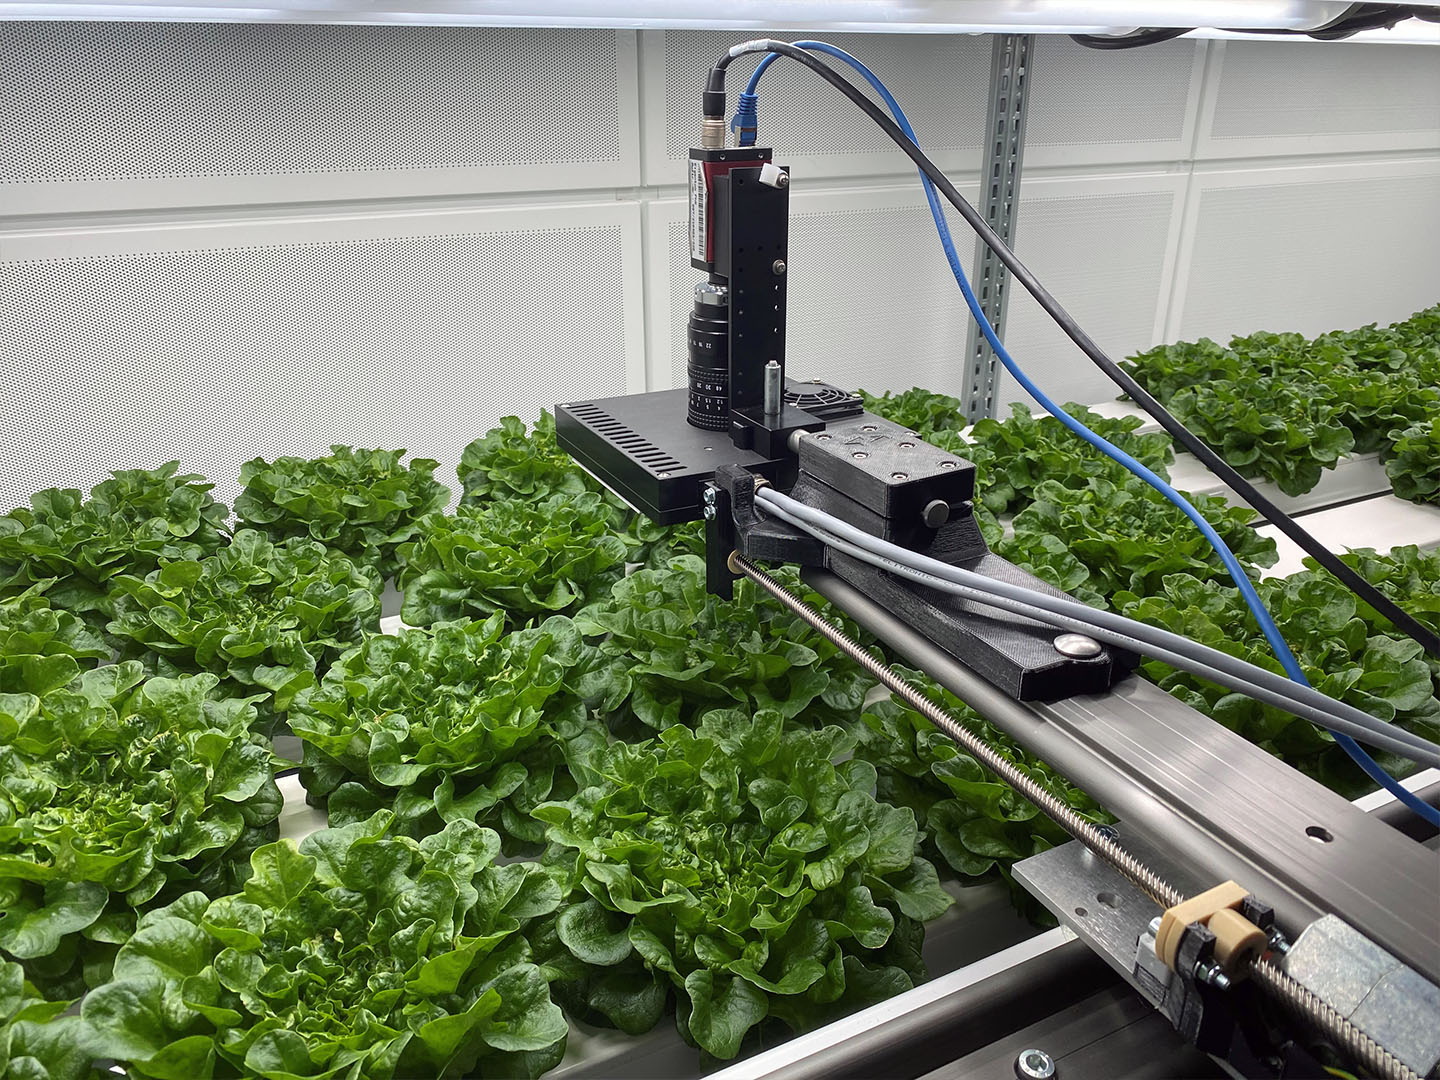 Laboraufbau im Projekt LightSaverAI beim Verbundpartner Hochschule Osnabrück: Ein automatisierter Messkopf erfasst kontinuierlich den Lichtbedarf in der Pflanzenproduktion, um eine bedarfsgerechte Kultivierung zu ermöglichen.